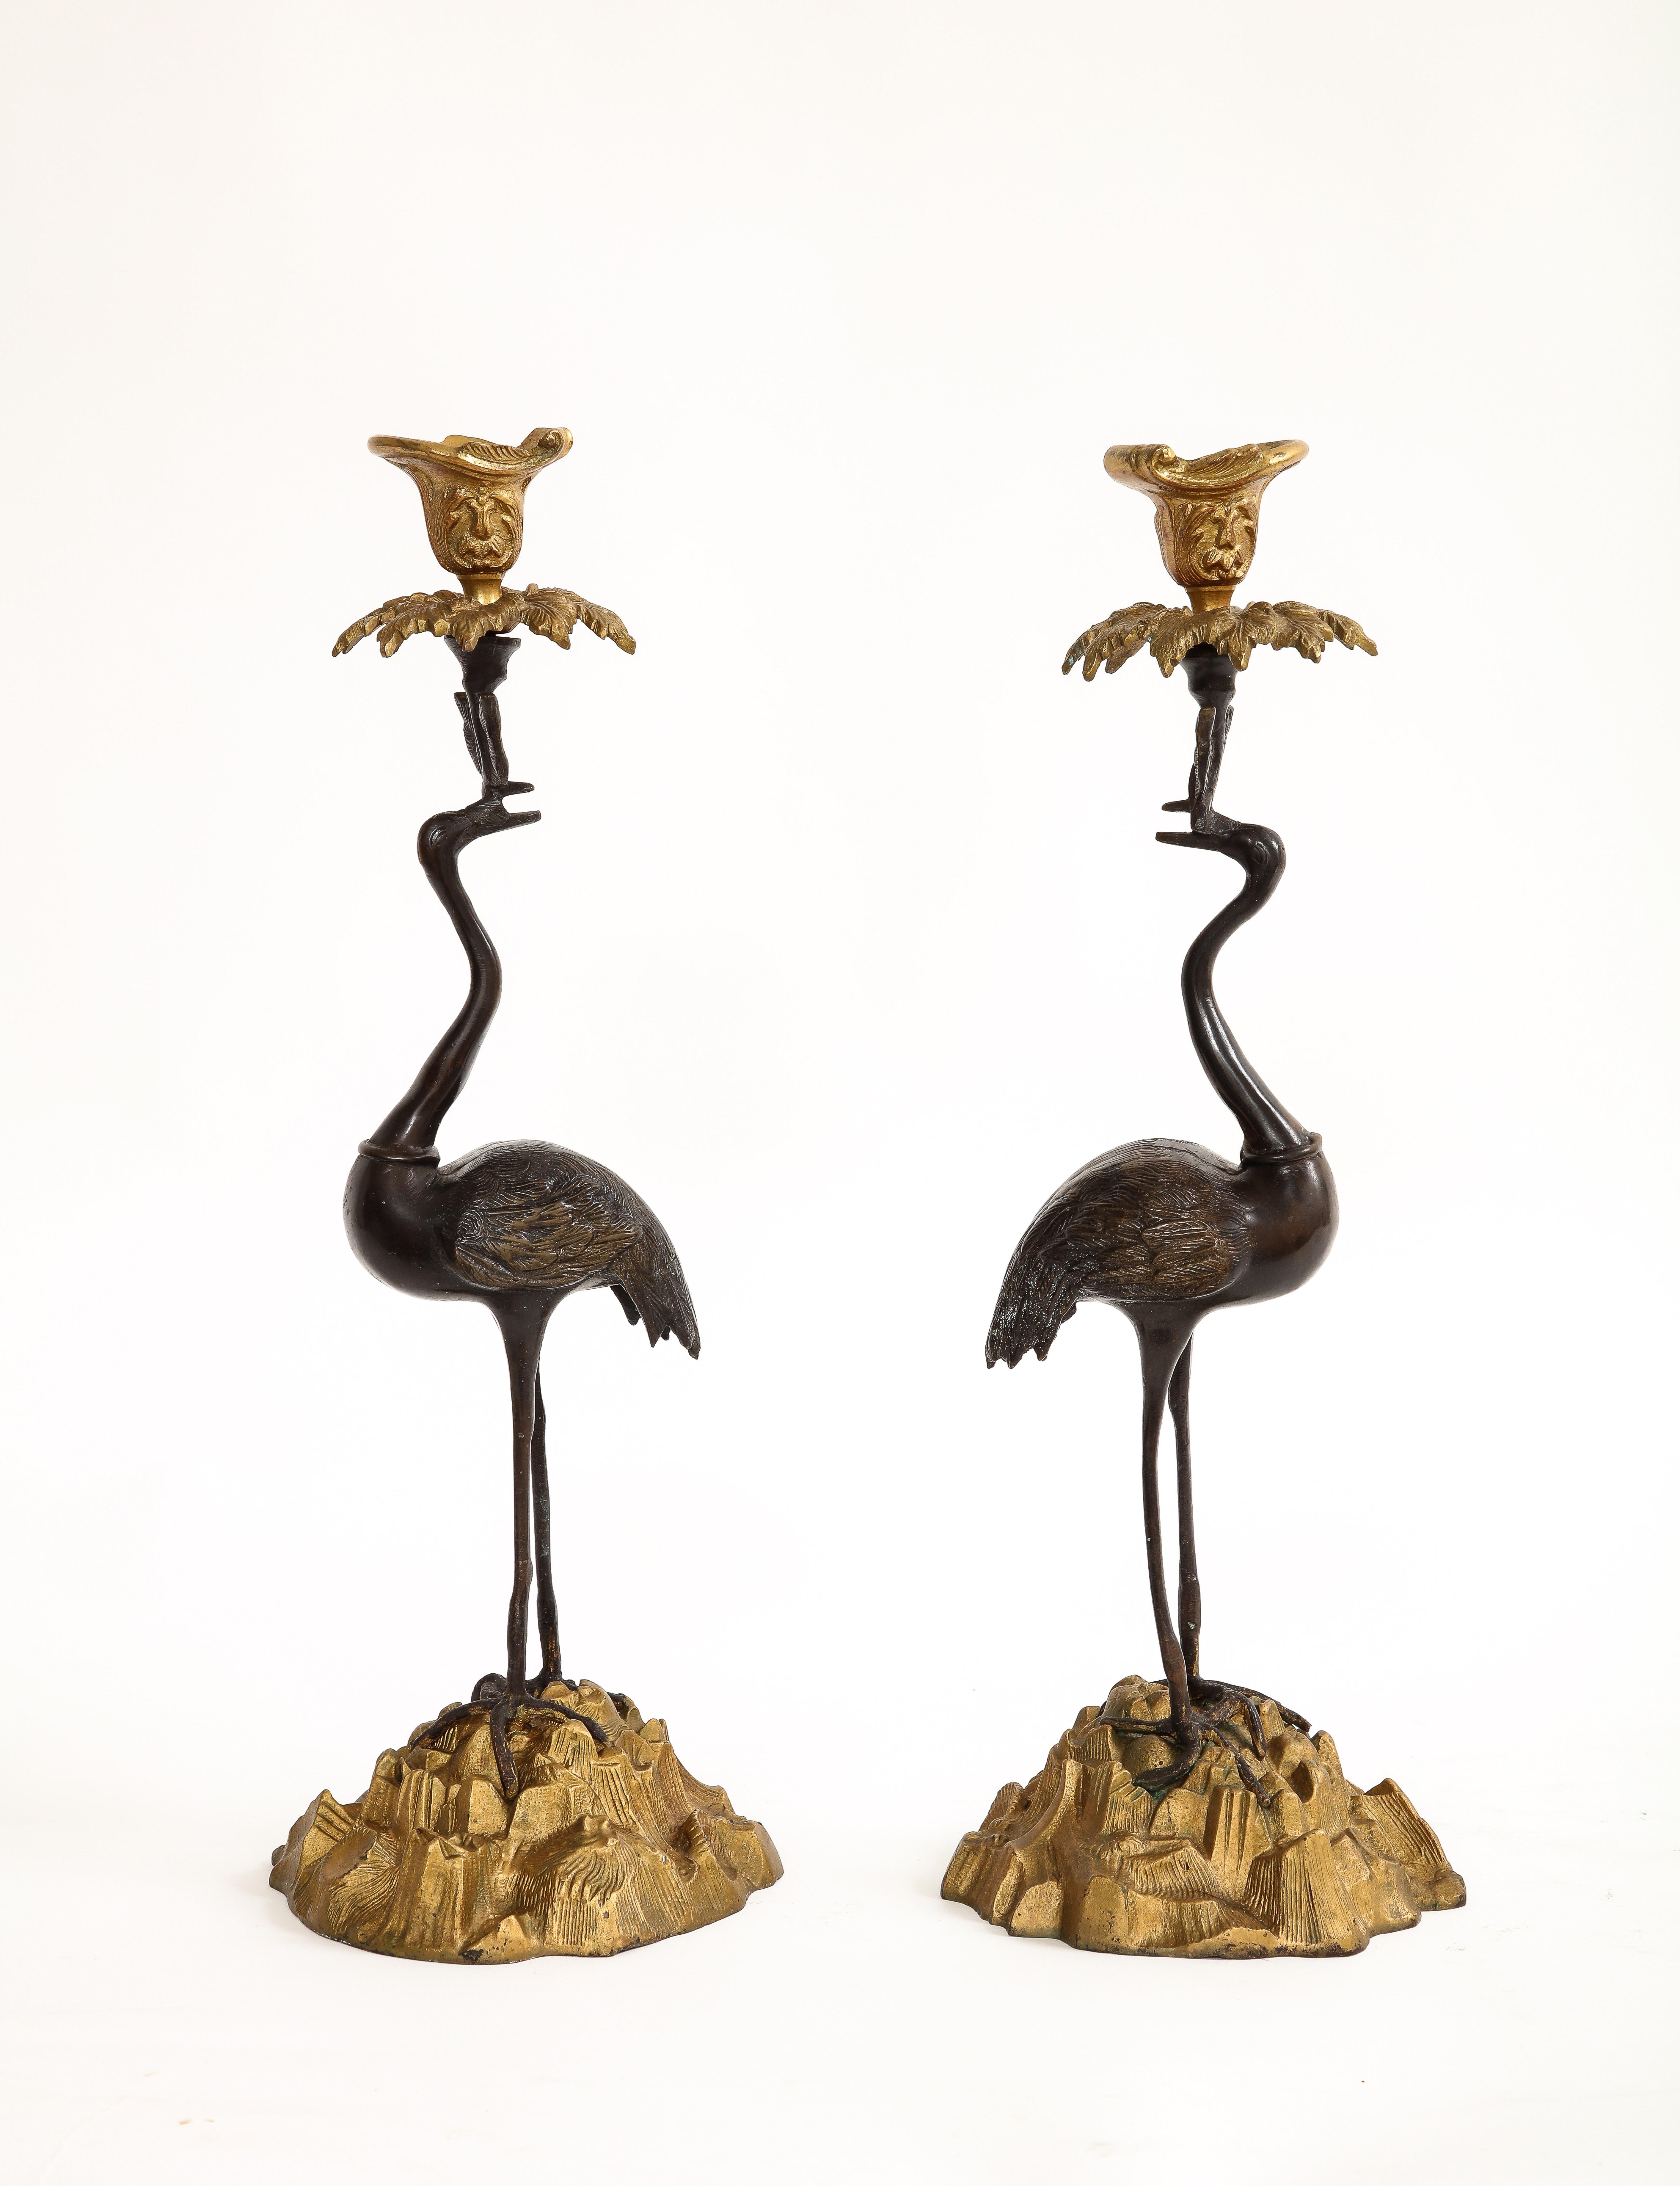 Paar patinierte und vergoldete Bronze-Kerzenständer in Kranichform aus dem 19. Jahrhundert

Dieses Paar Kerzenhalter aus dem 19. Jahrhundert ist ein beeindruckendes Beispiel für vergoldetes Bronzedesign. Es zeigt zwei aufrecht stehende, tief